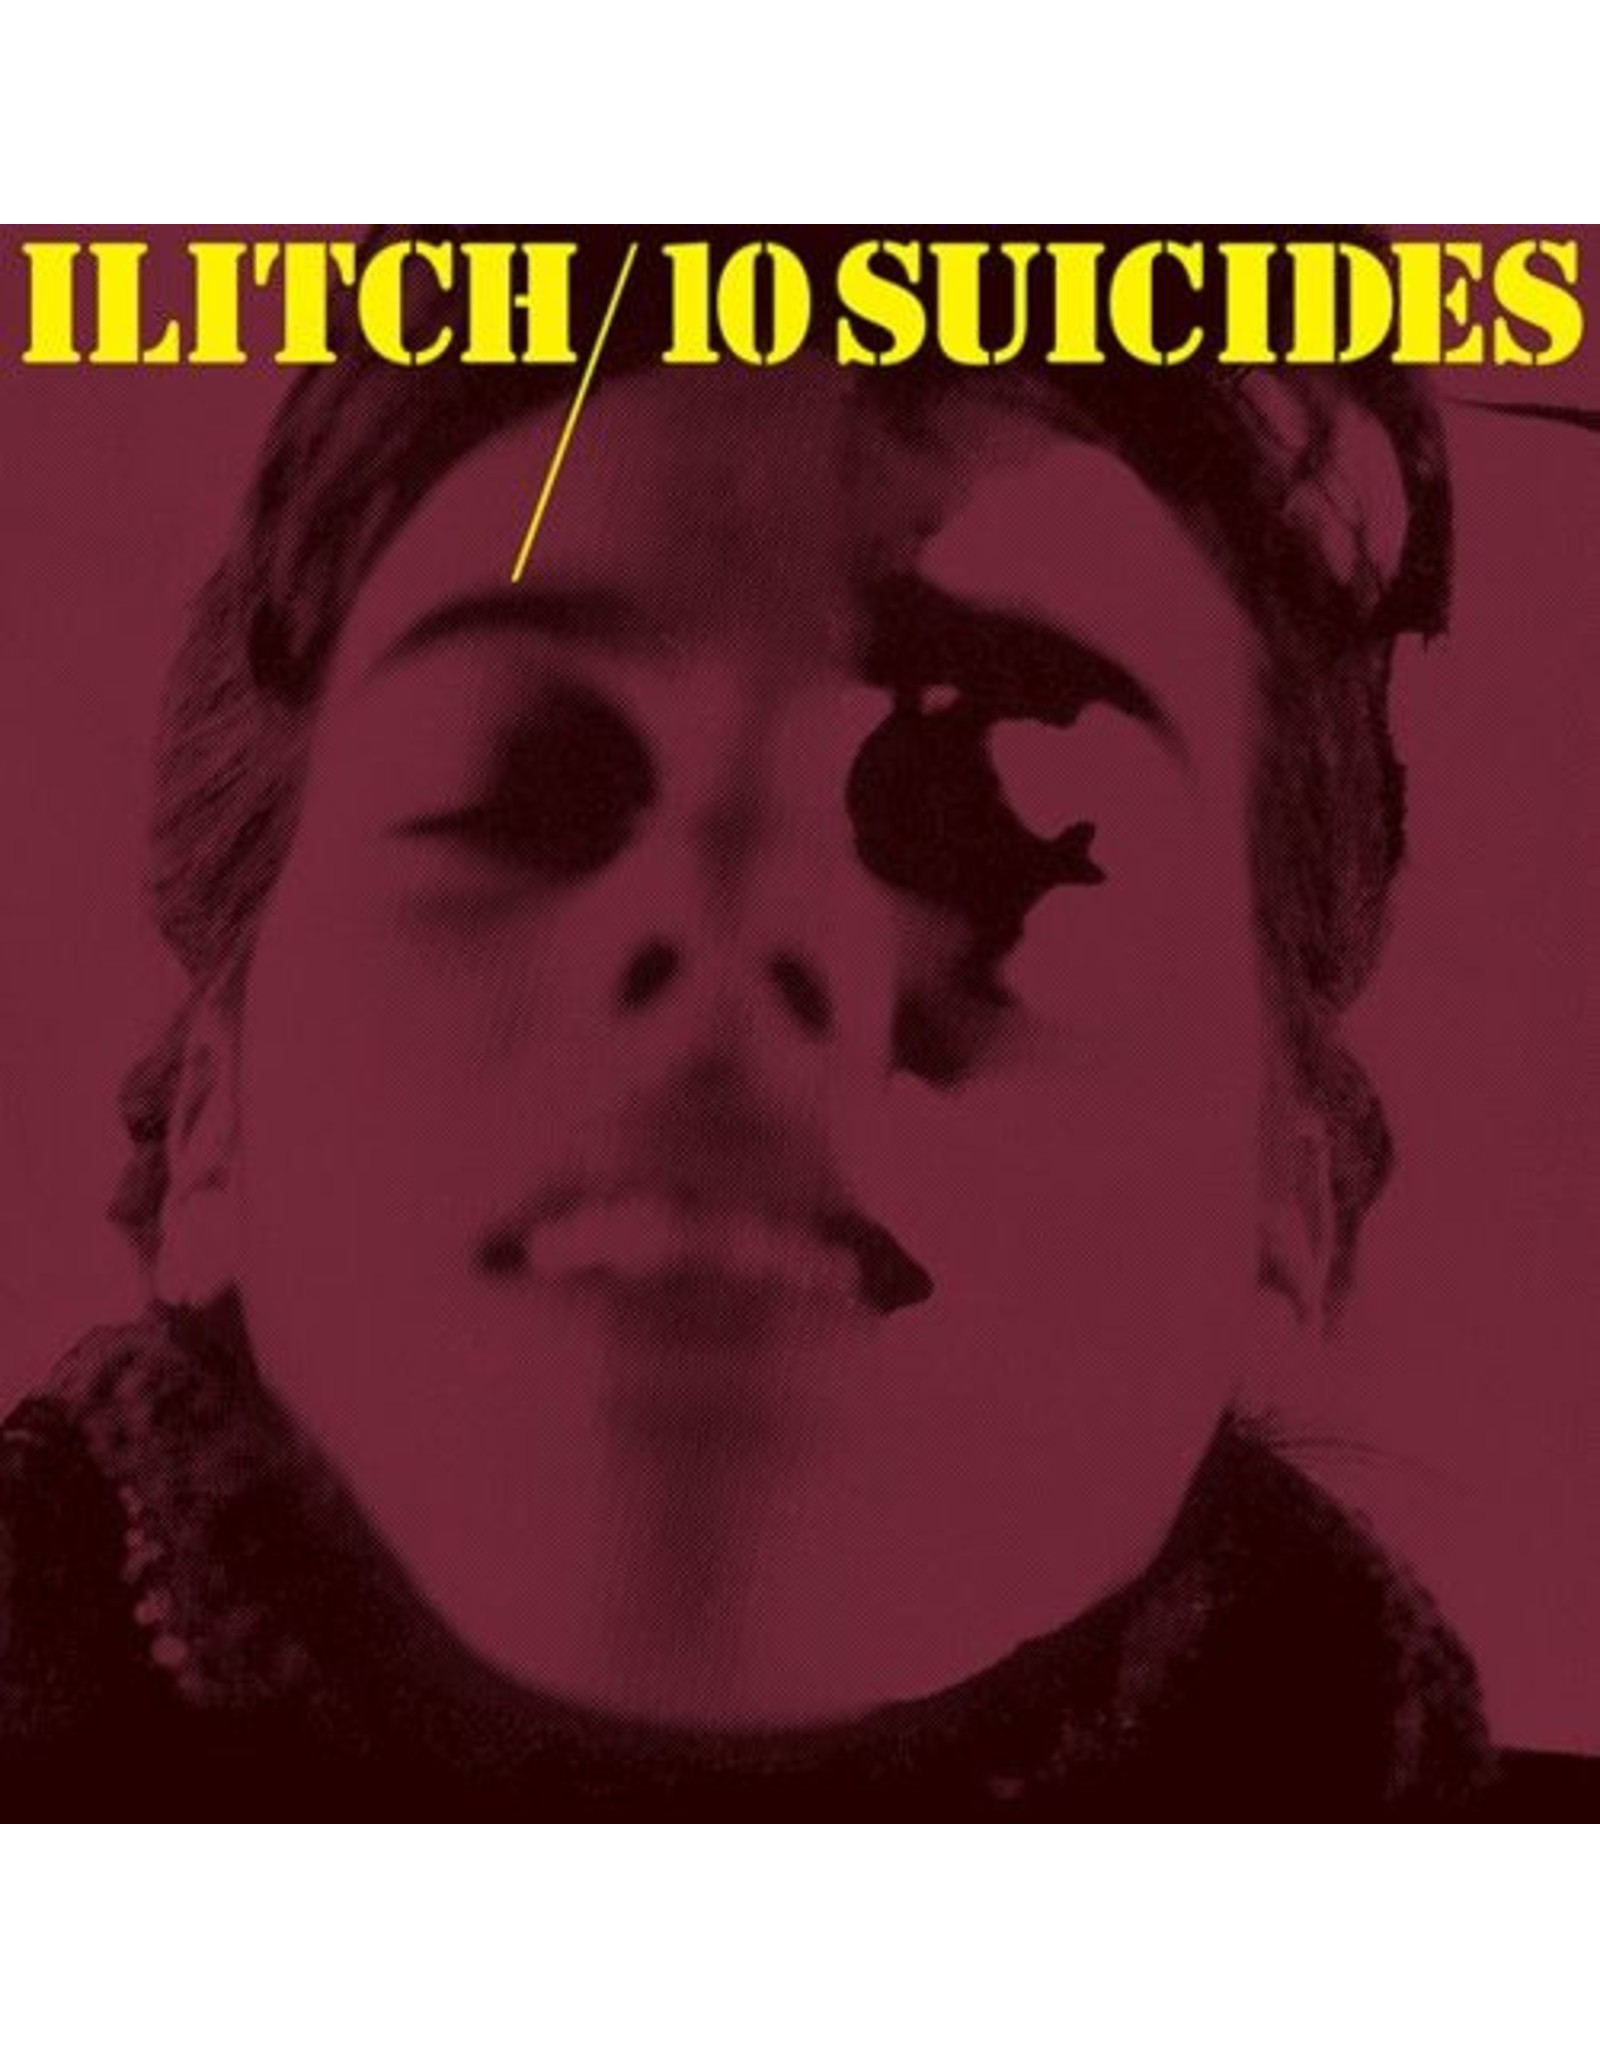 Superior Viaduct Ilitch: 10 Suicides LP